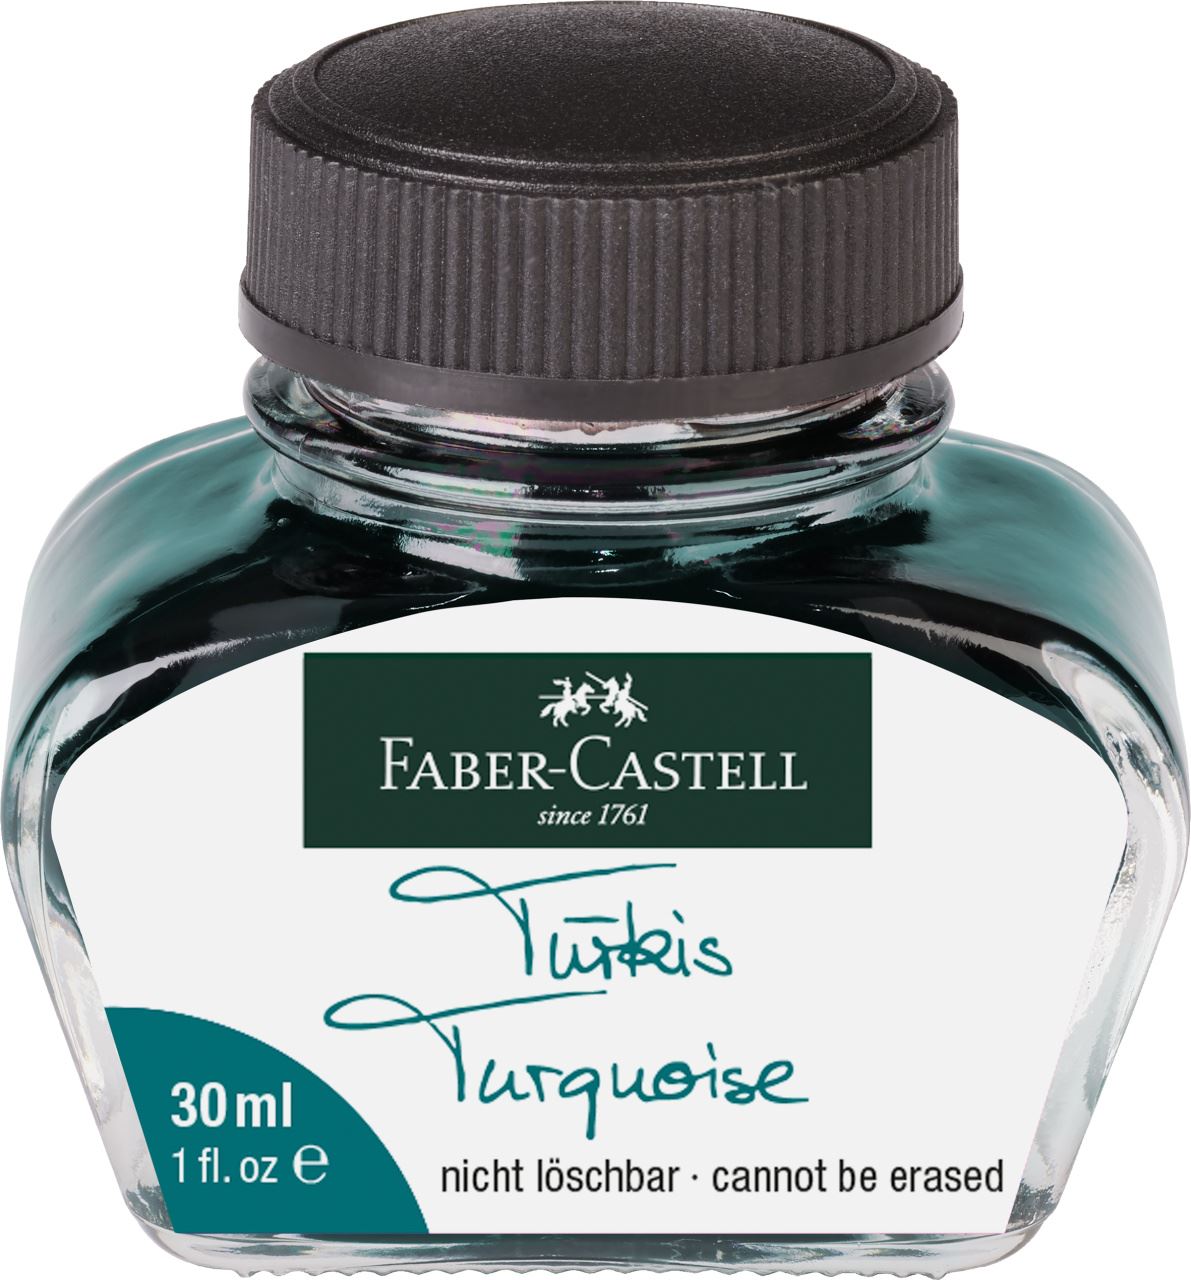 Faber-Castell - Boccetta di inchiosto turchese 30 ml